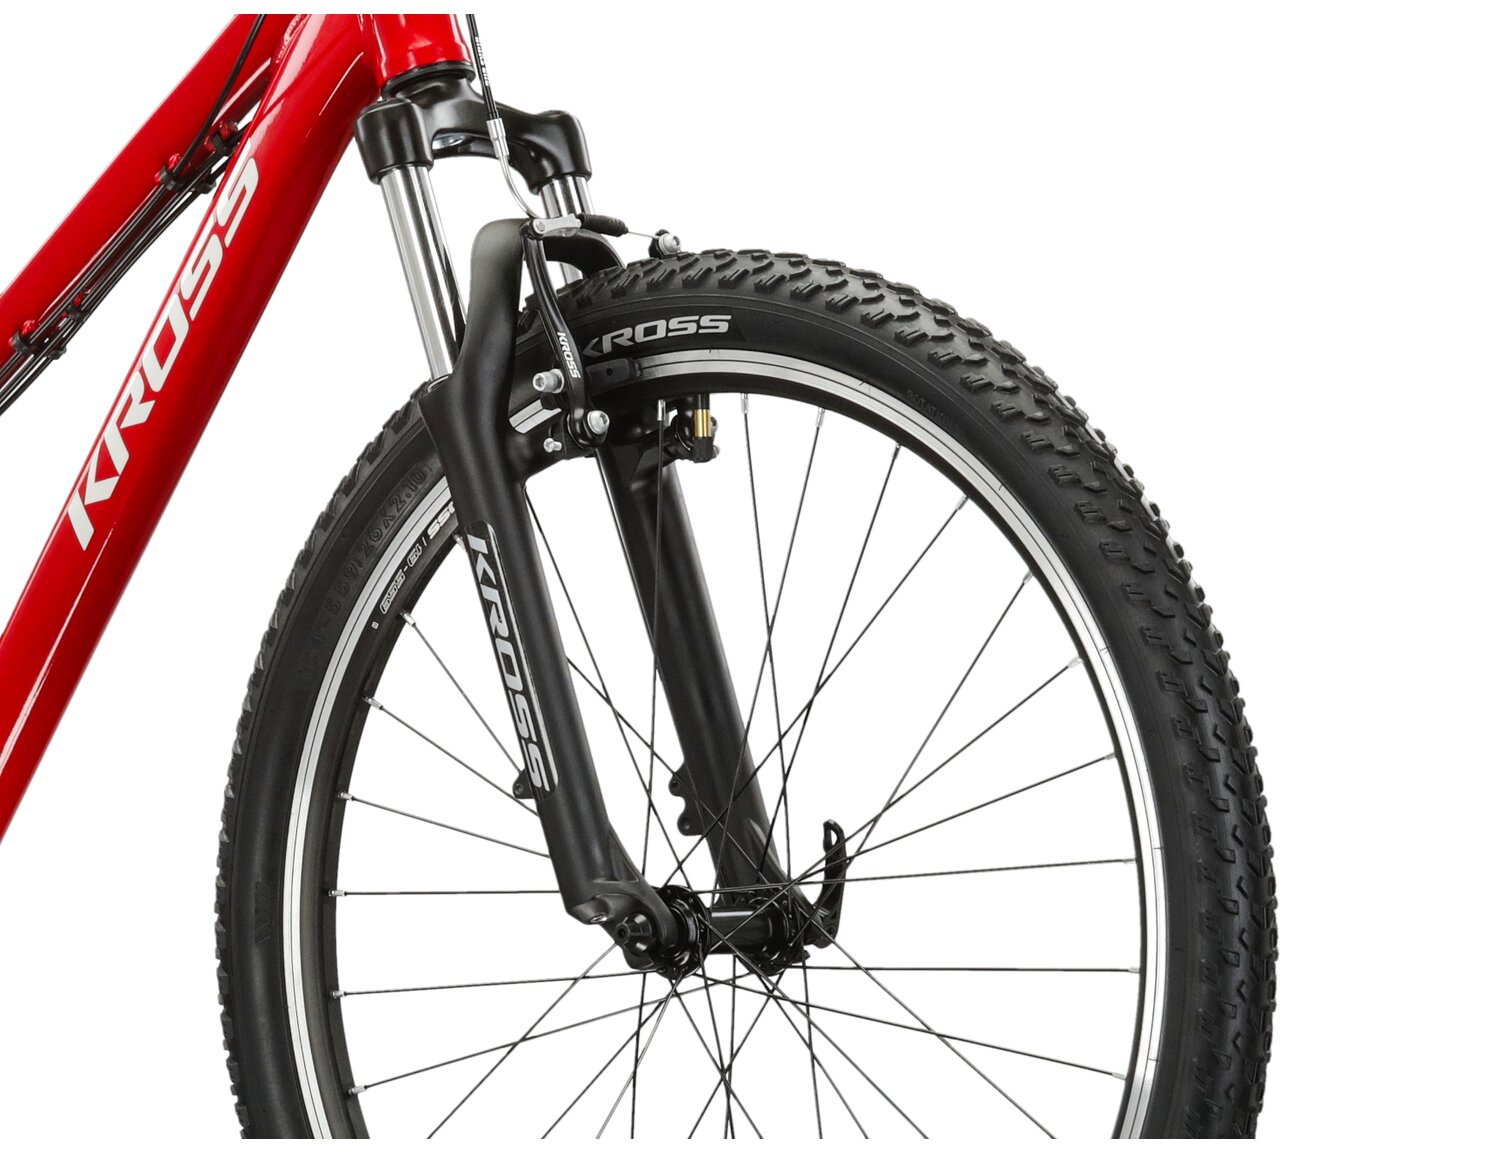  Aluminowa rama, amortyzowany widelec o skoku 80 mm oraz opony o szerokości 2,1 cala w rowerze juniorskim KROSS Berg JR 1.1 